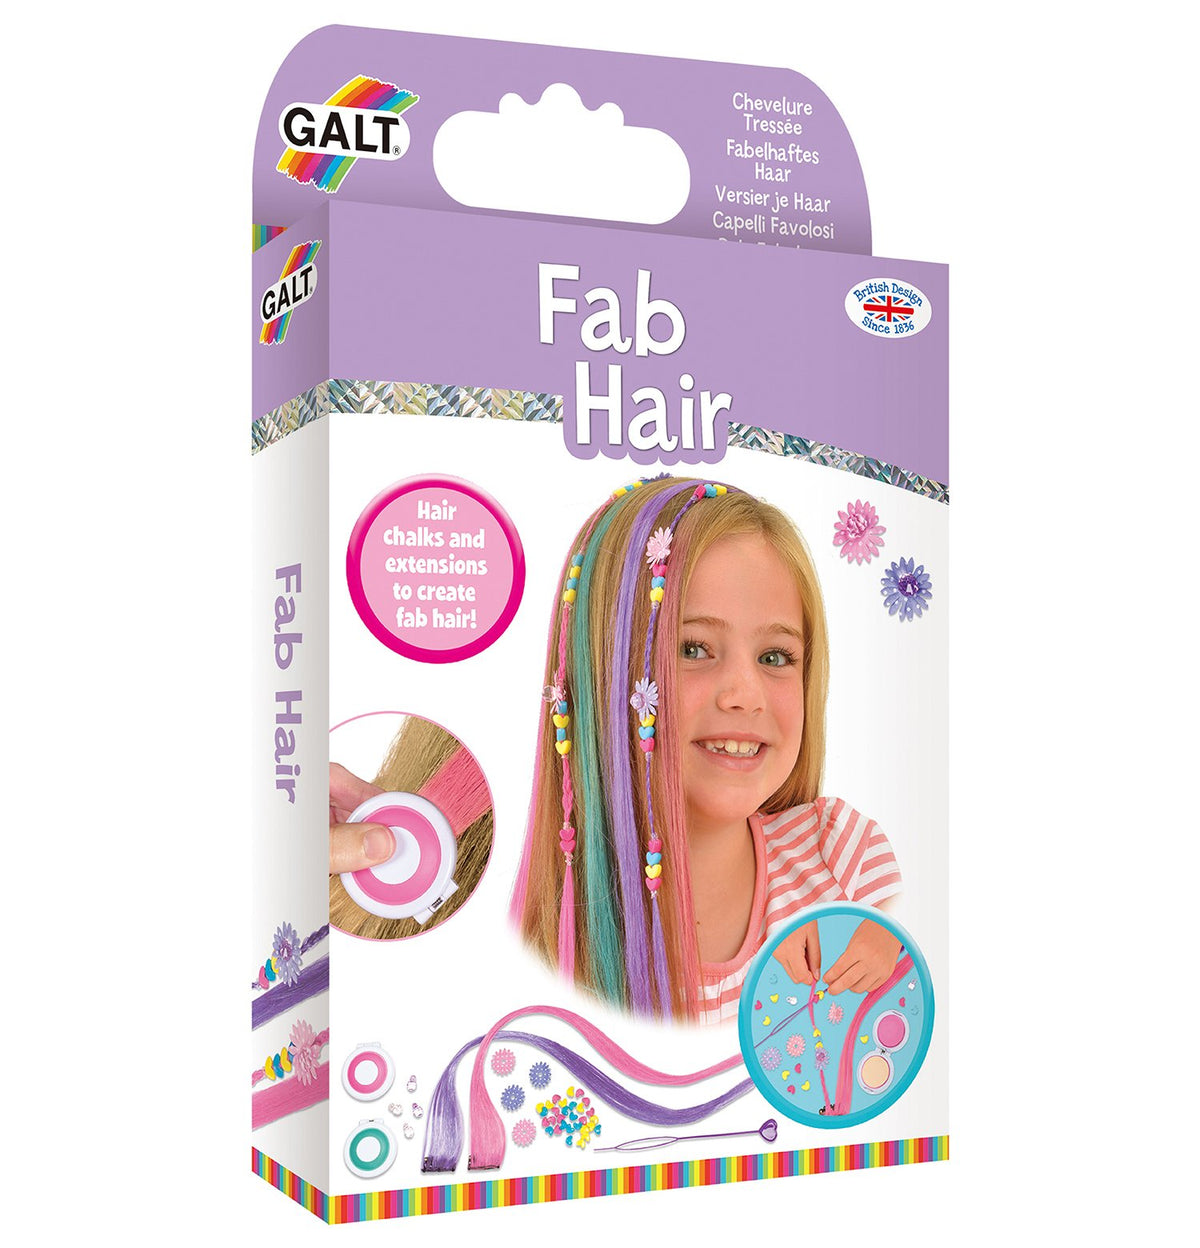 Fab Hair - Galt